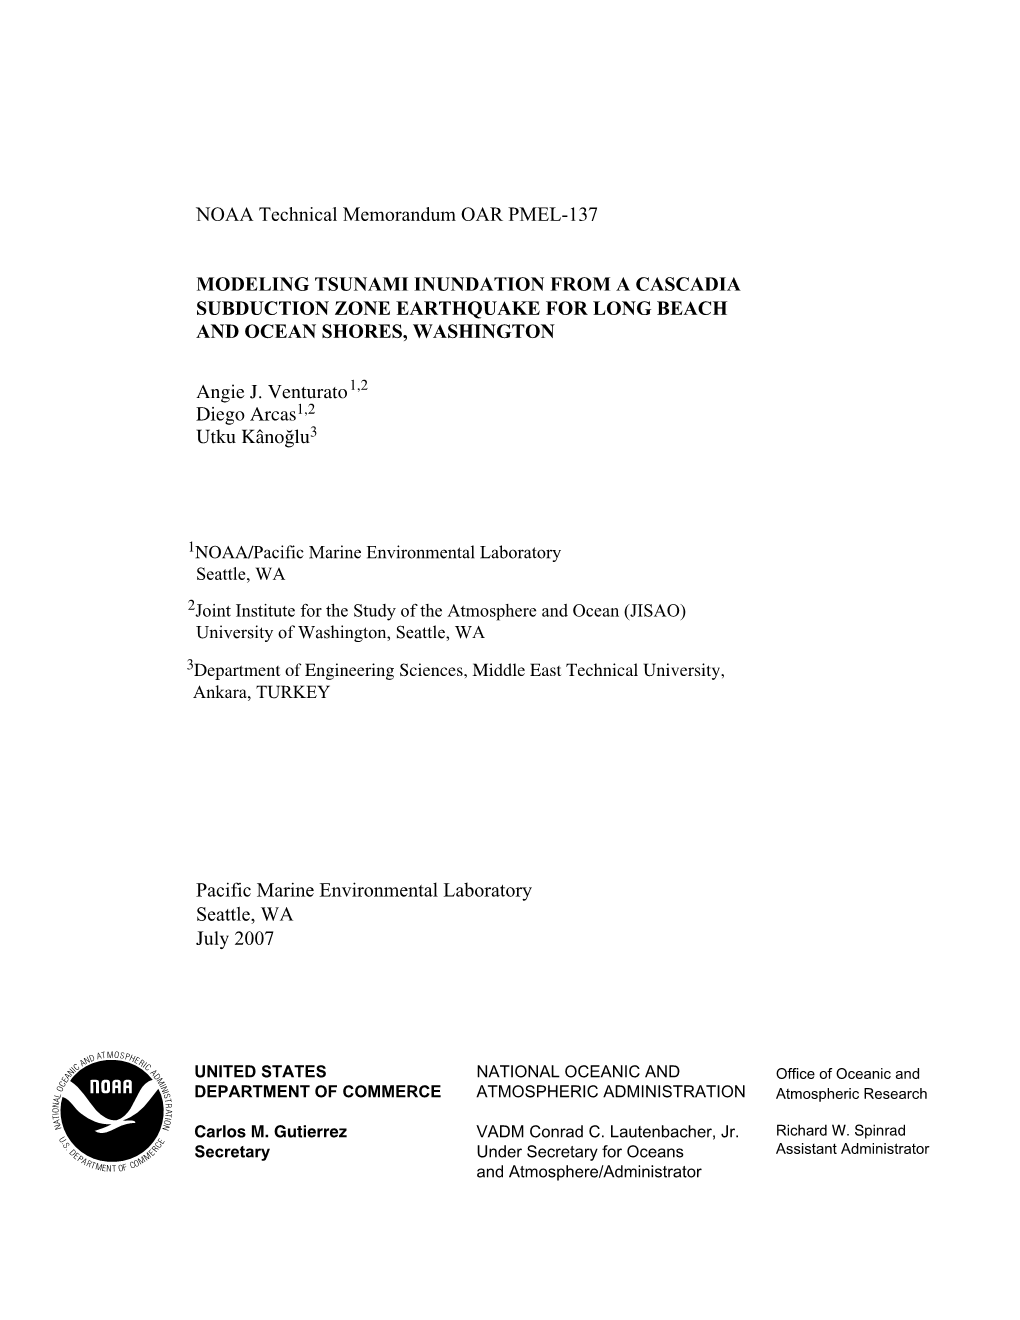 NOAA Technical Memorandum OAR PMEL-137 MODELING TSUNAMI